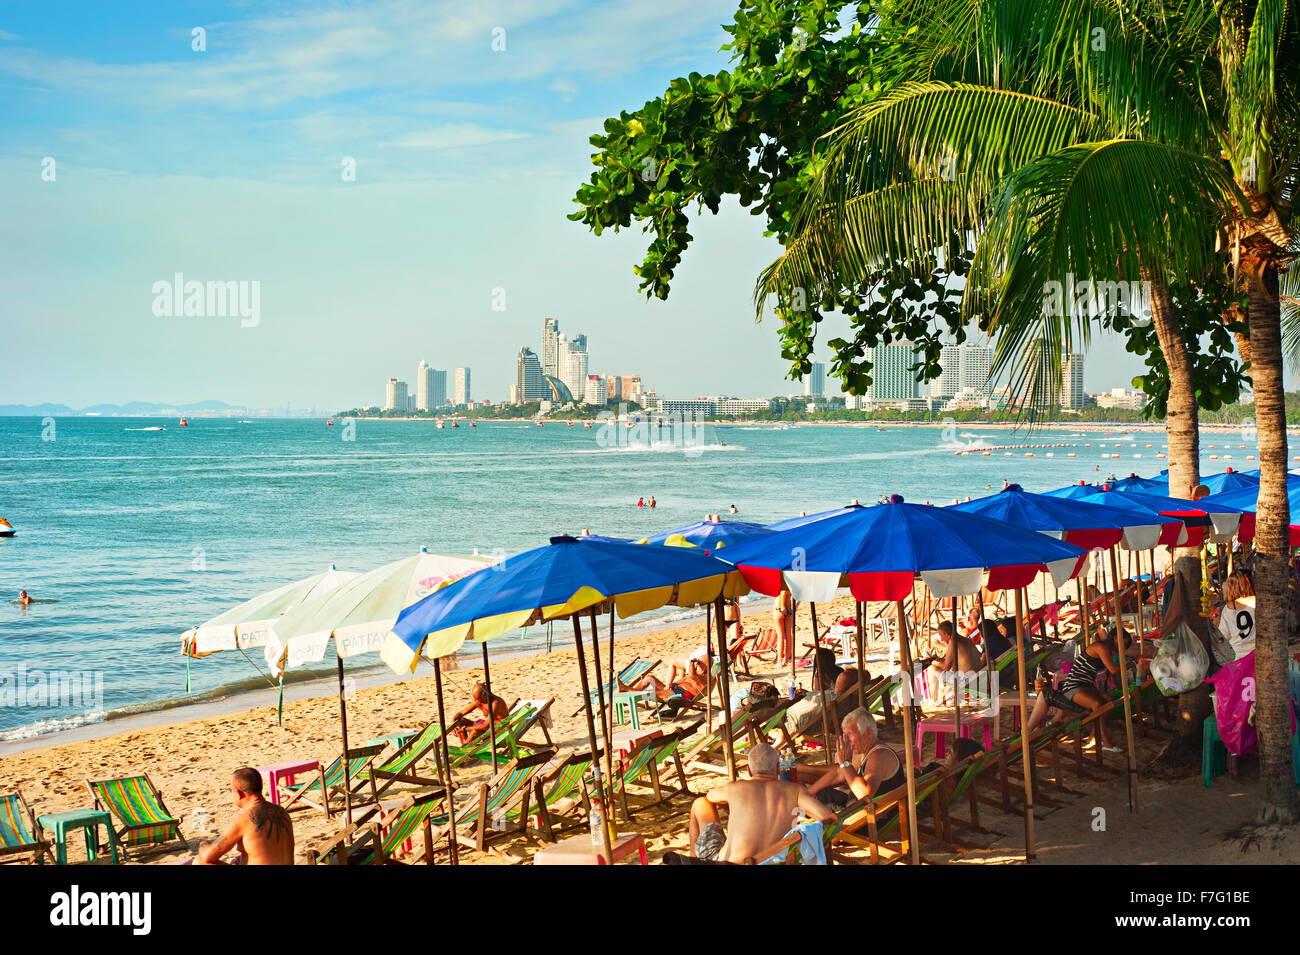 Les gens sur la plage de Pattaya, Thaïlande. Près de 20 millions de touristes visitant la Thaïlande tous les Banque D'Images